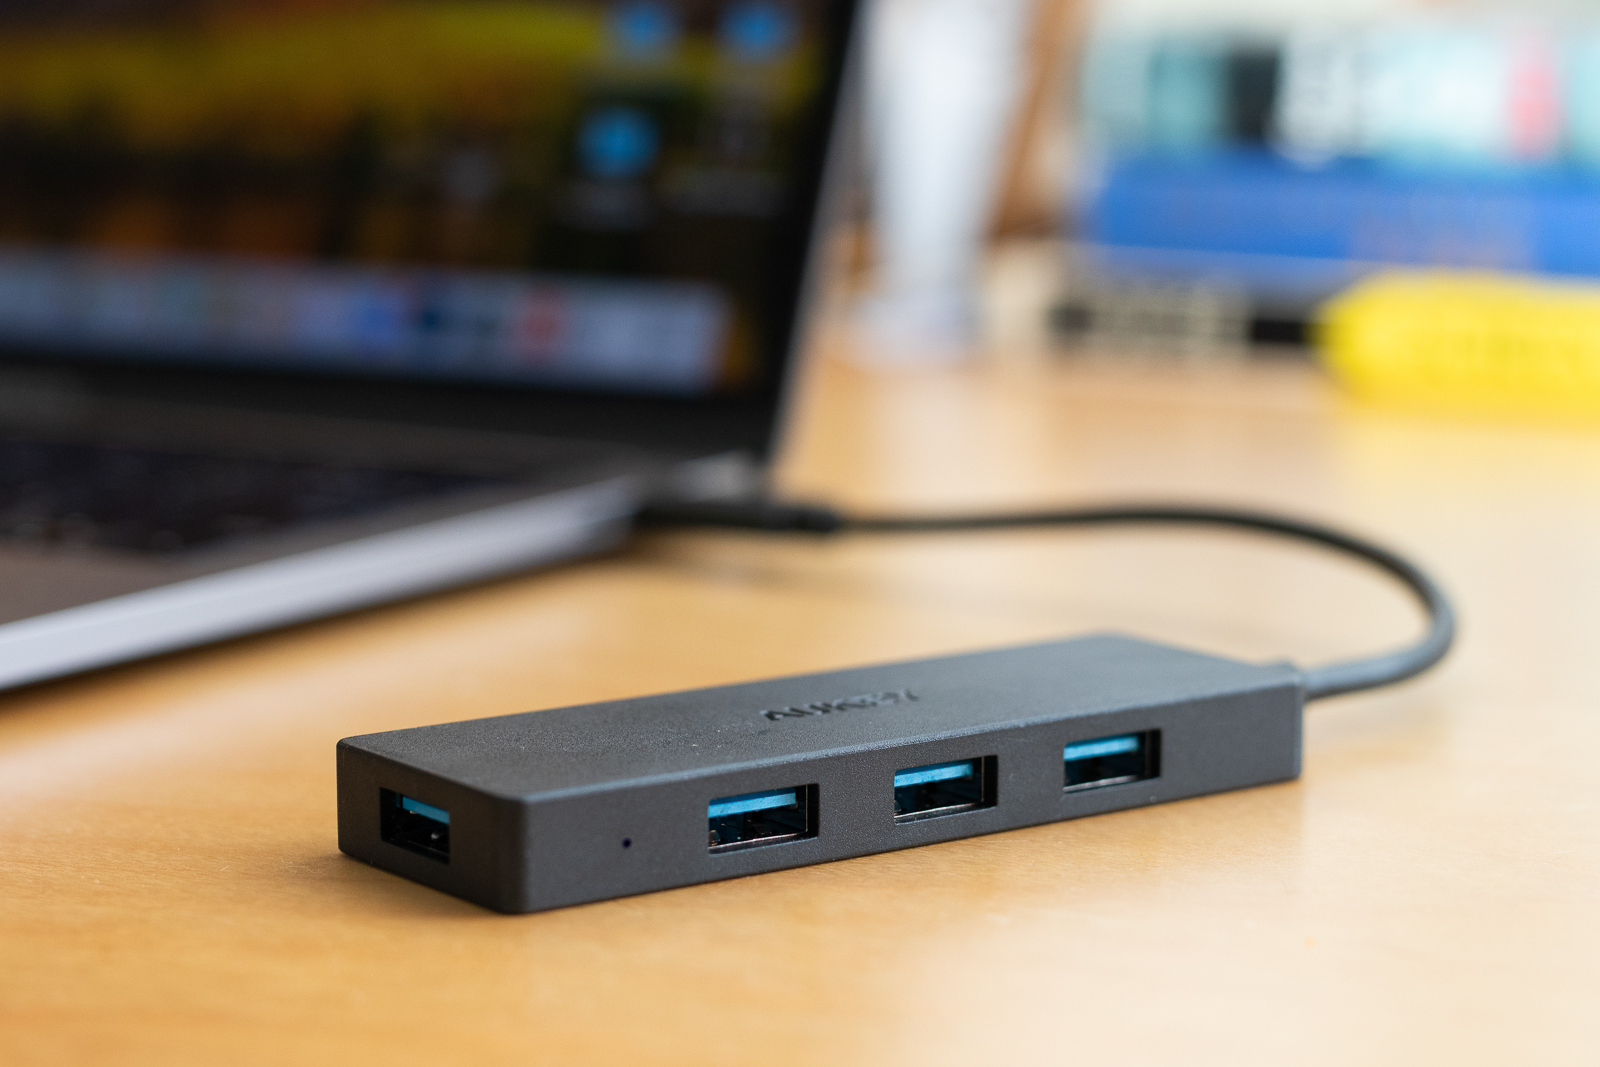 HyperDrive USB-C Hub MacBook Pro 15 - Adaptateur pour chargeur Apple USB-C  87 W - Station d'accueil & Dock - Sanho